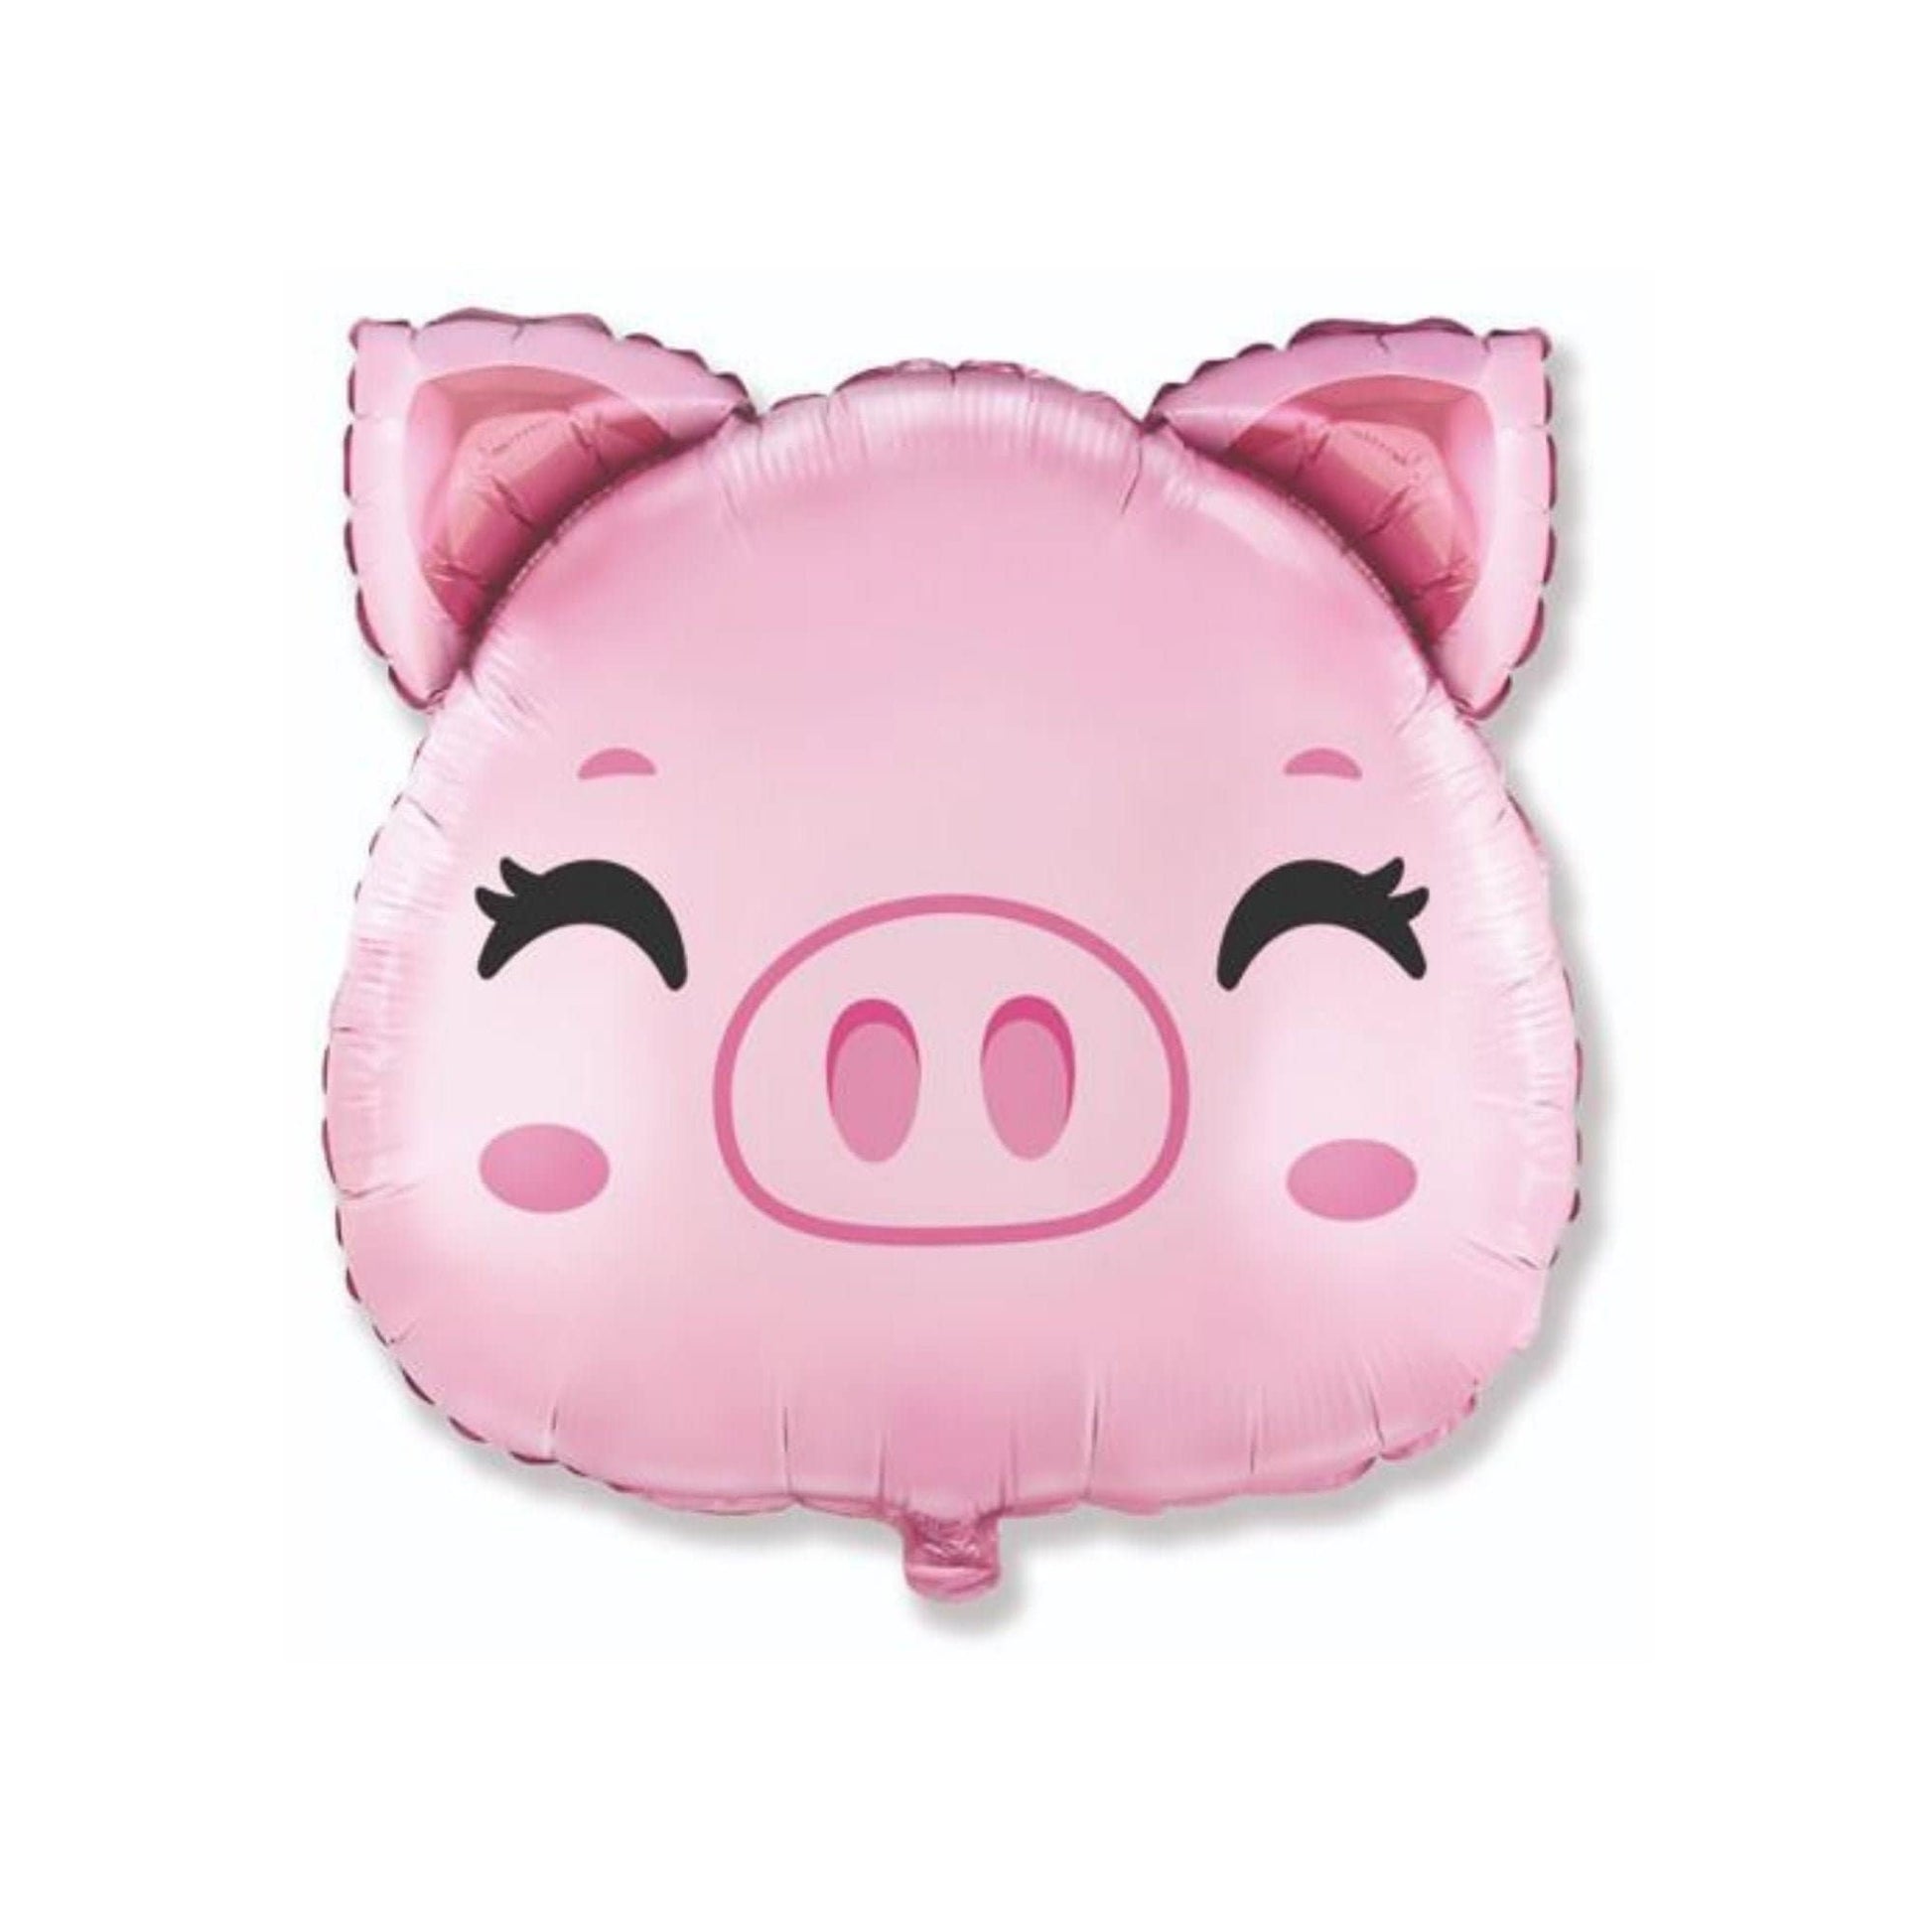 Pink Pig Foil Animal Balloon